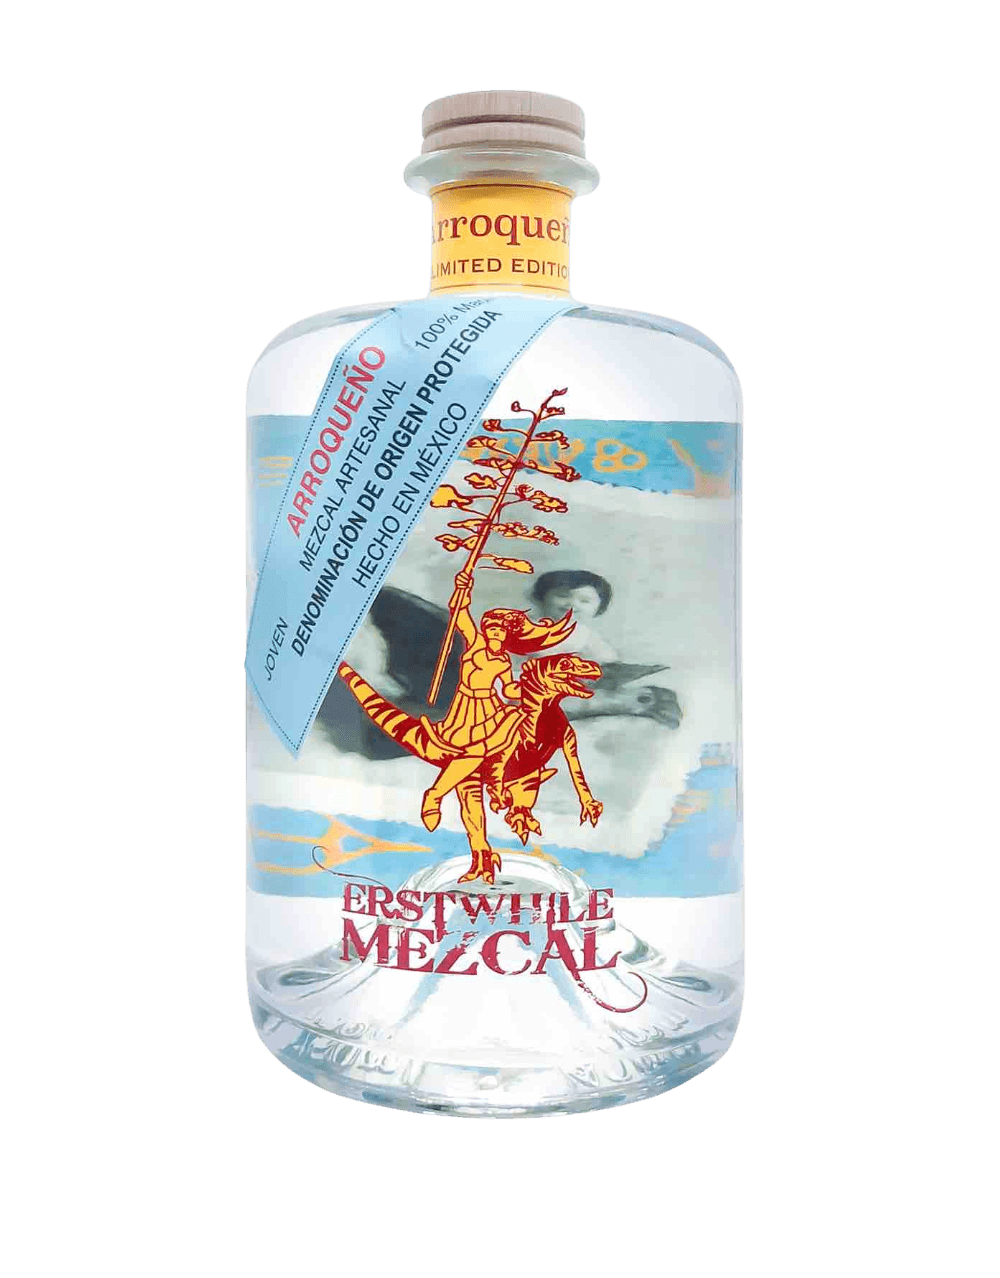 Erstwhile Arroqueño Mezcal (2018 Limited Edition)